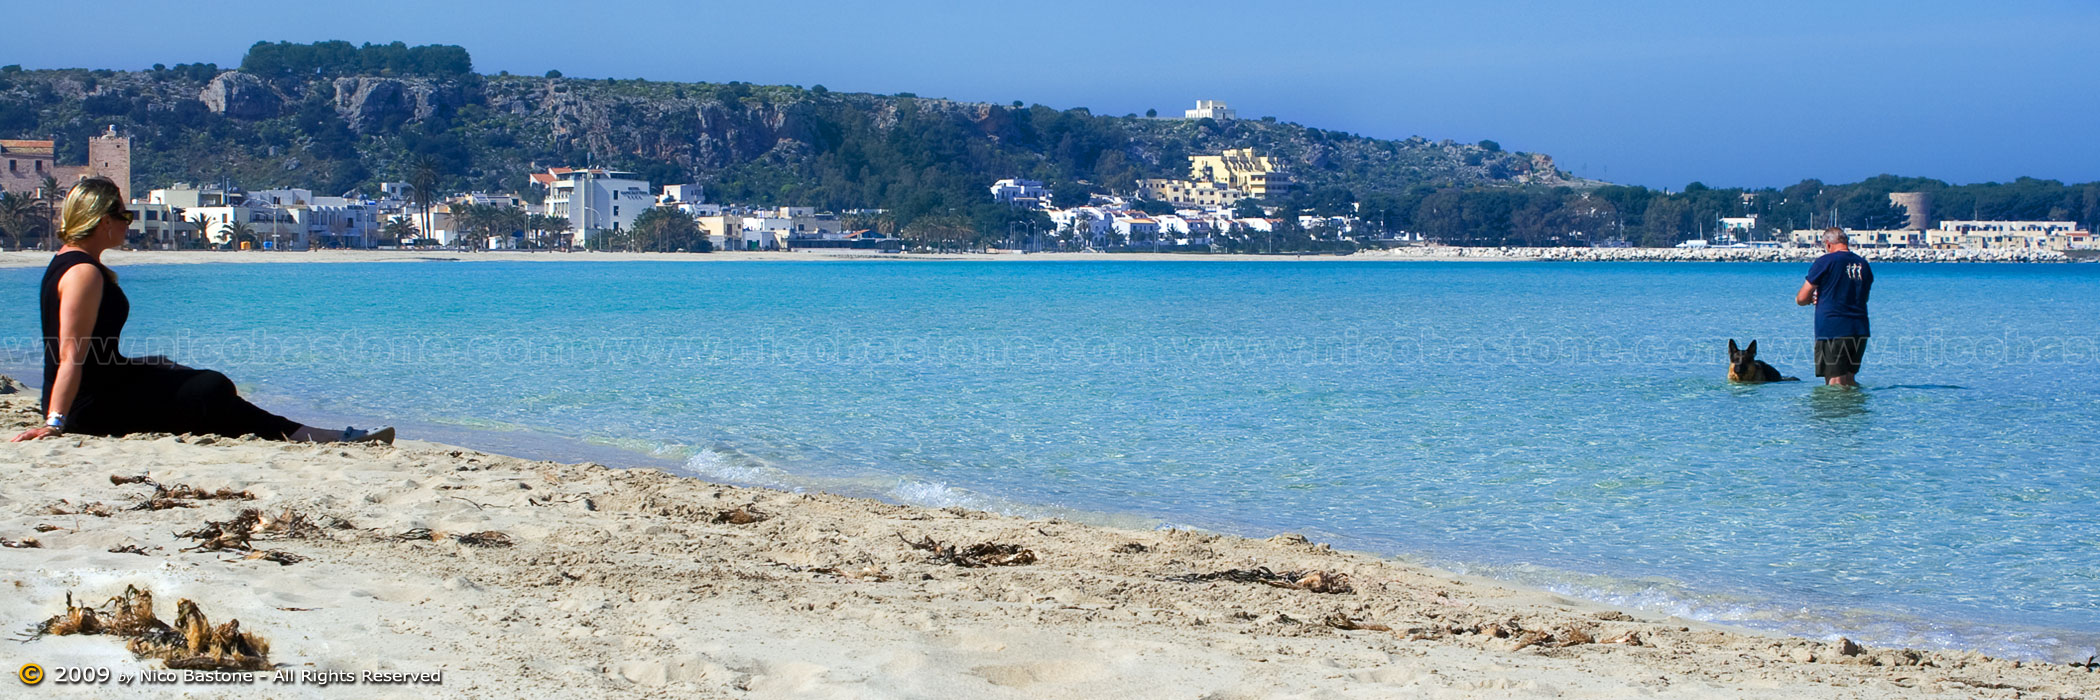 San Vito Lo Capo, TP "Relax nella spiaggia  - Relax in the beach  2100x700"